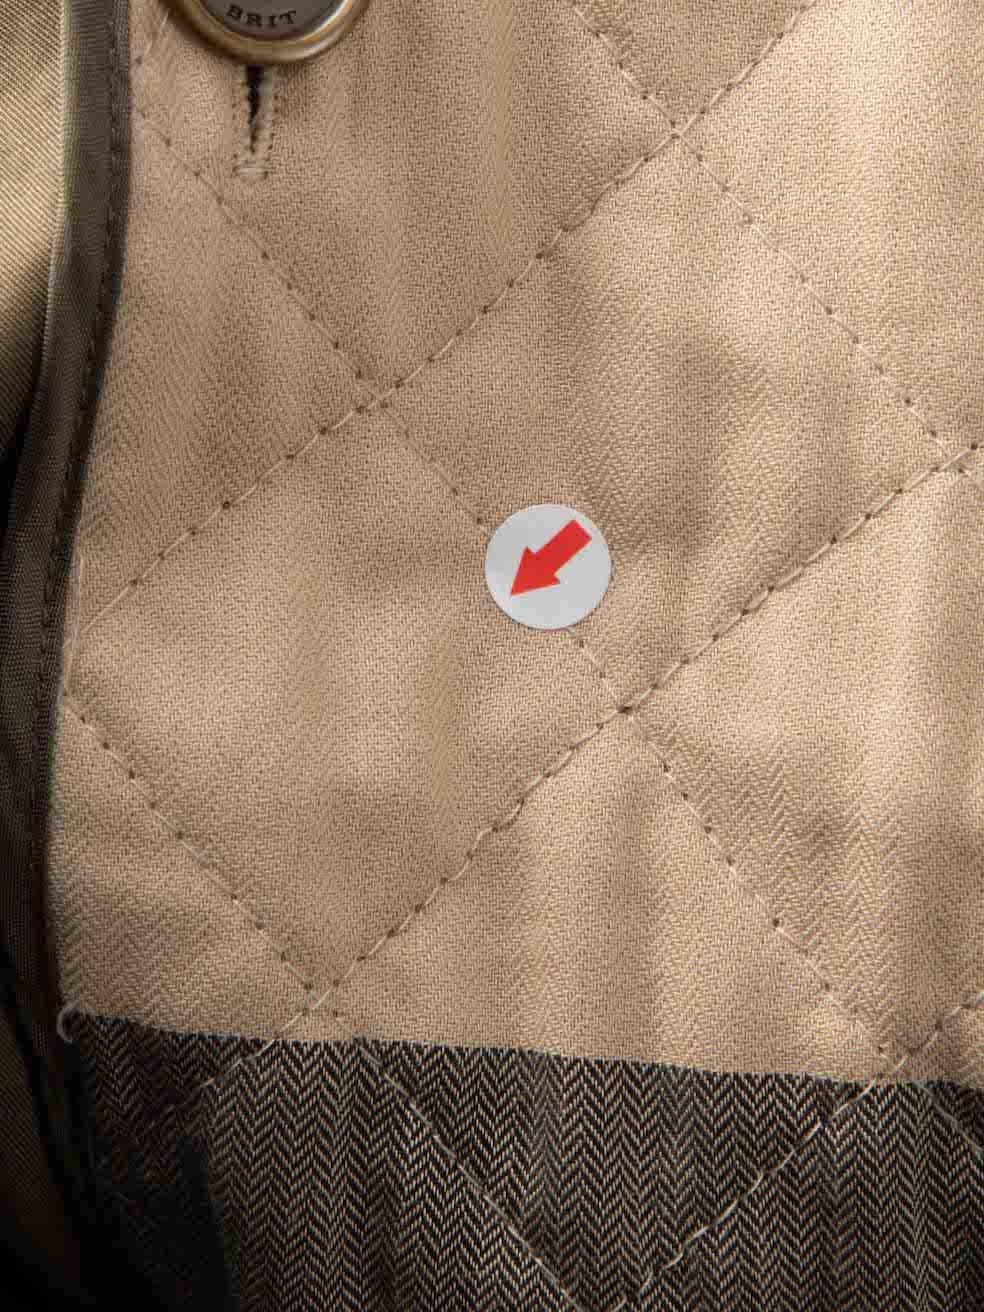 Burberry Burberry Brit Vert Manteau Trench ceinturé à couche amovible Taille L Pour femmes en vente